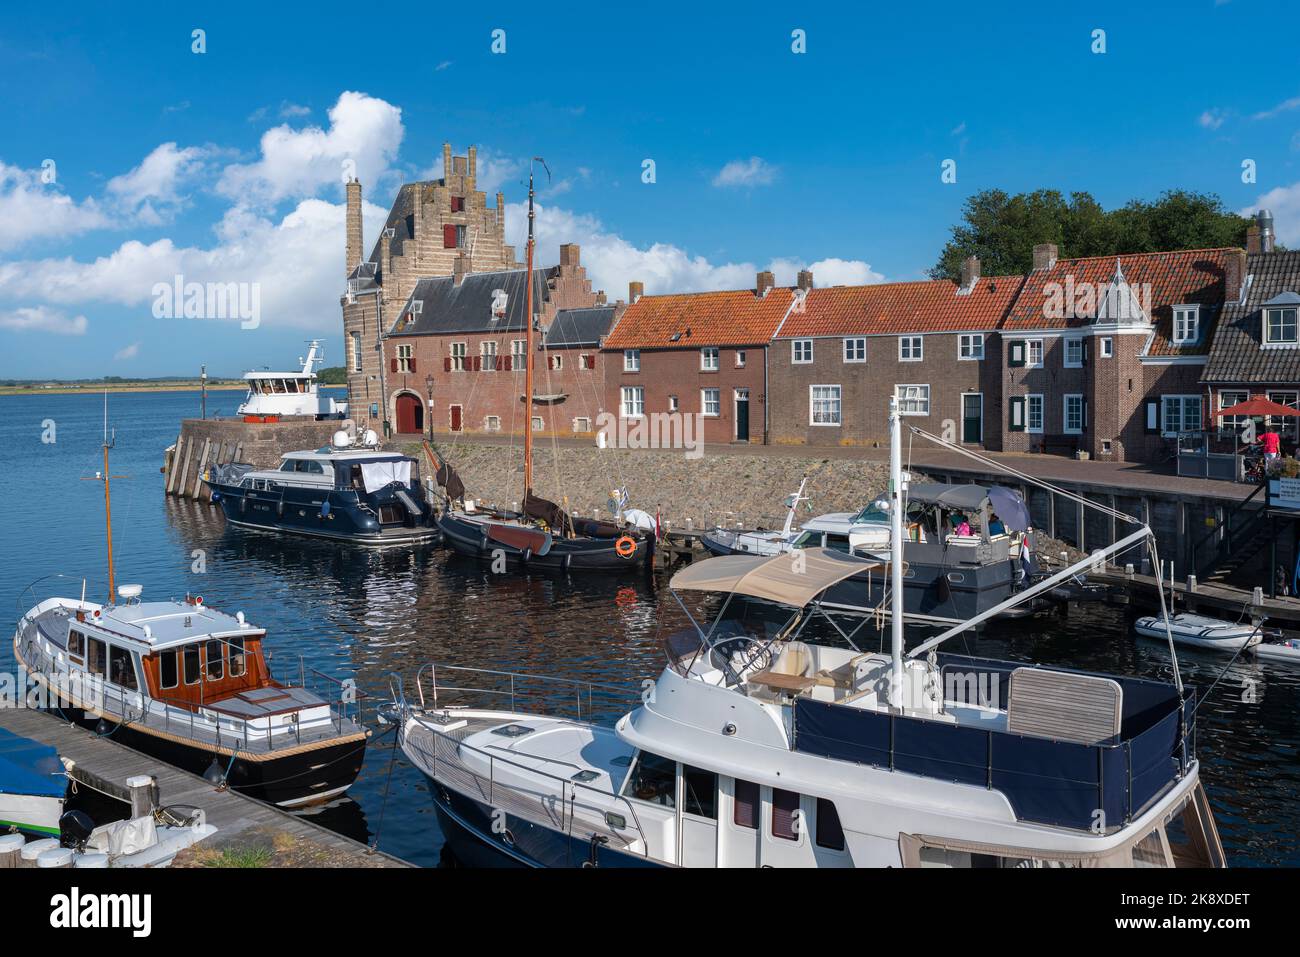 Historical city fortification Campveerse Toren, Veere, Zeeland, Netherlands, Europe Stock Photo